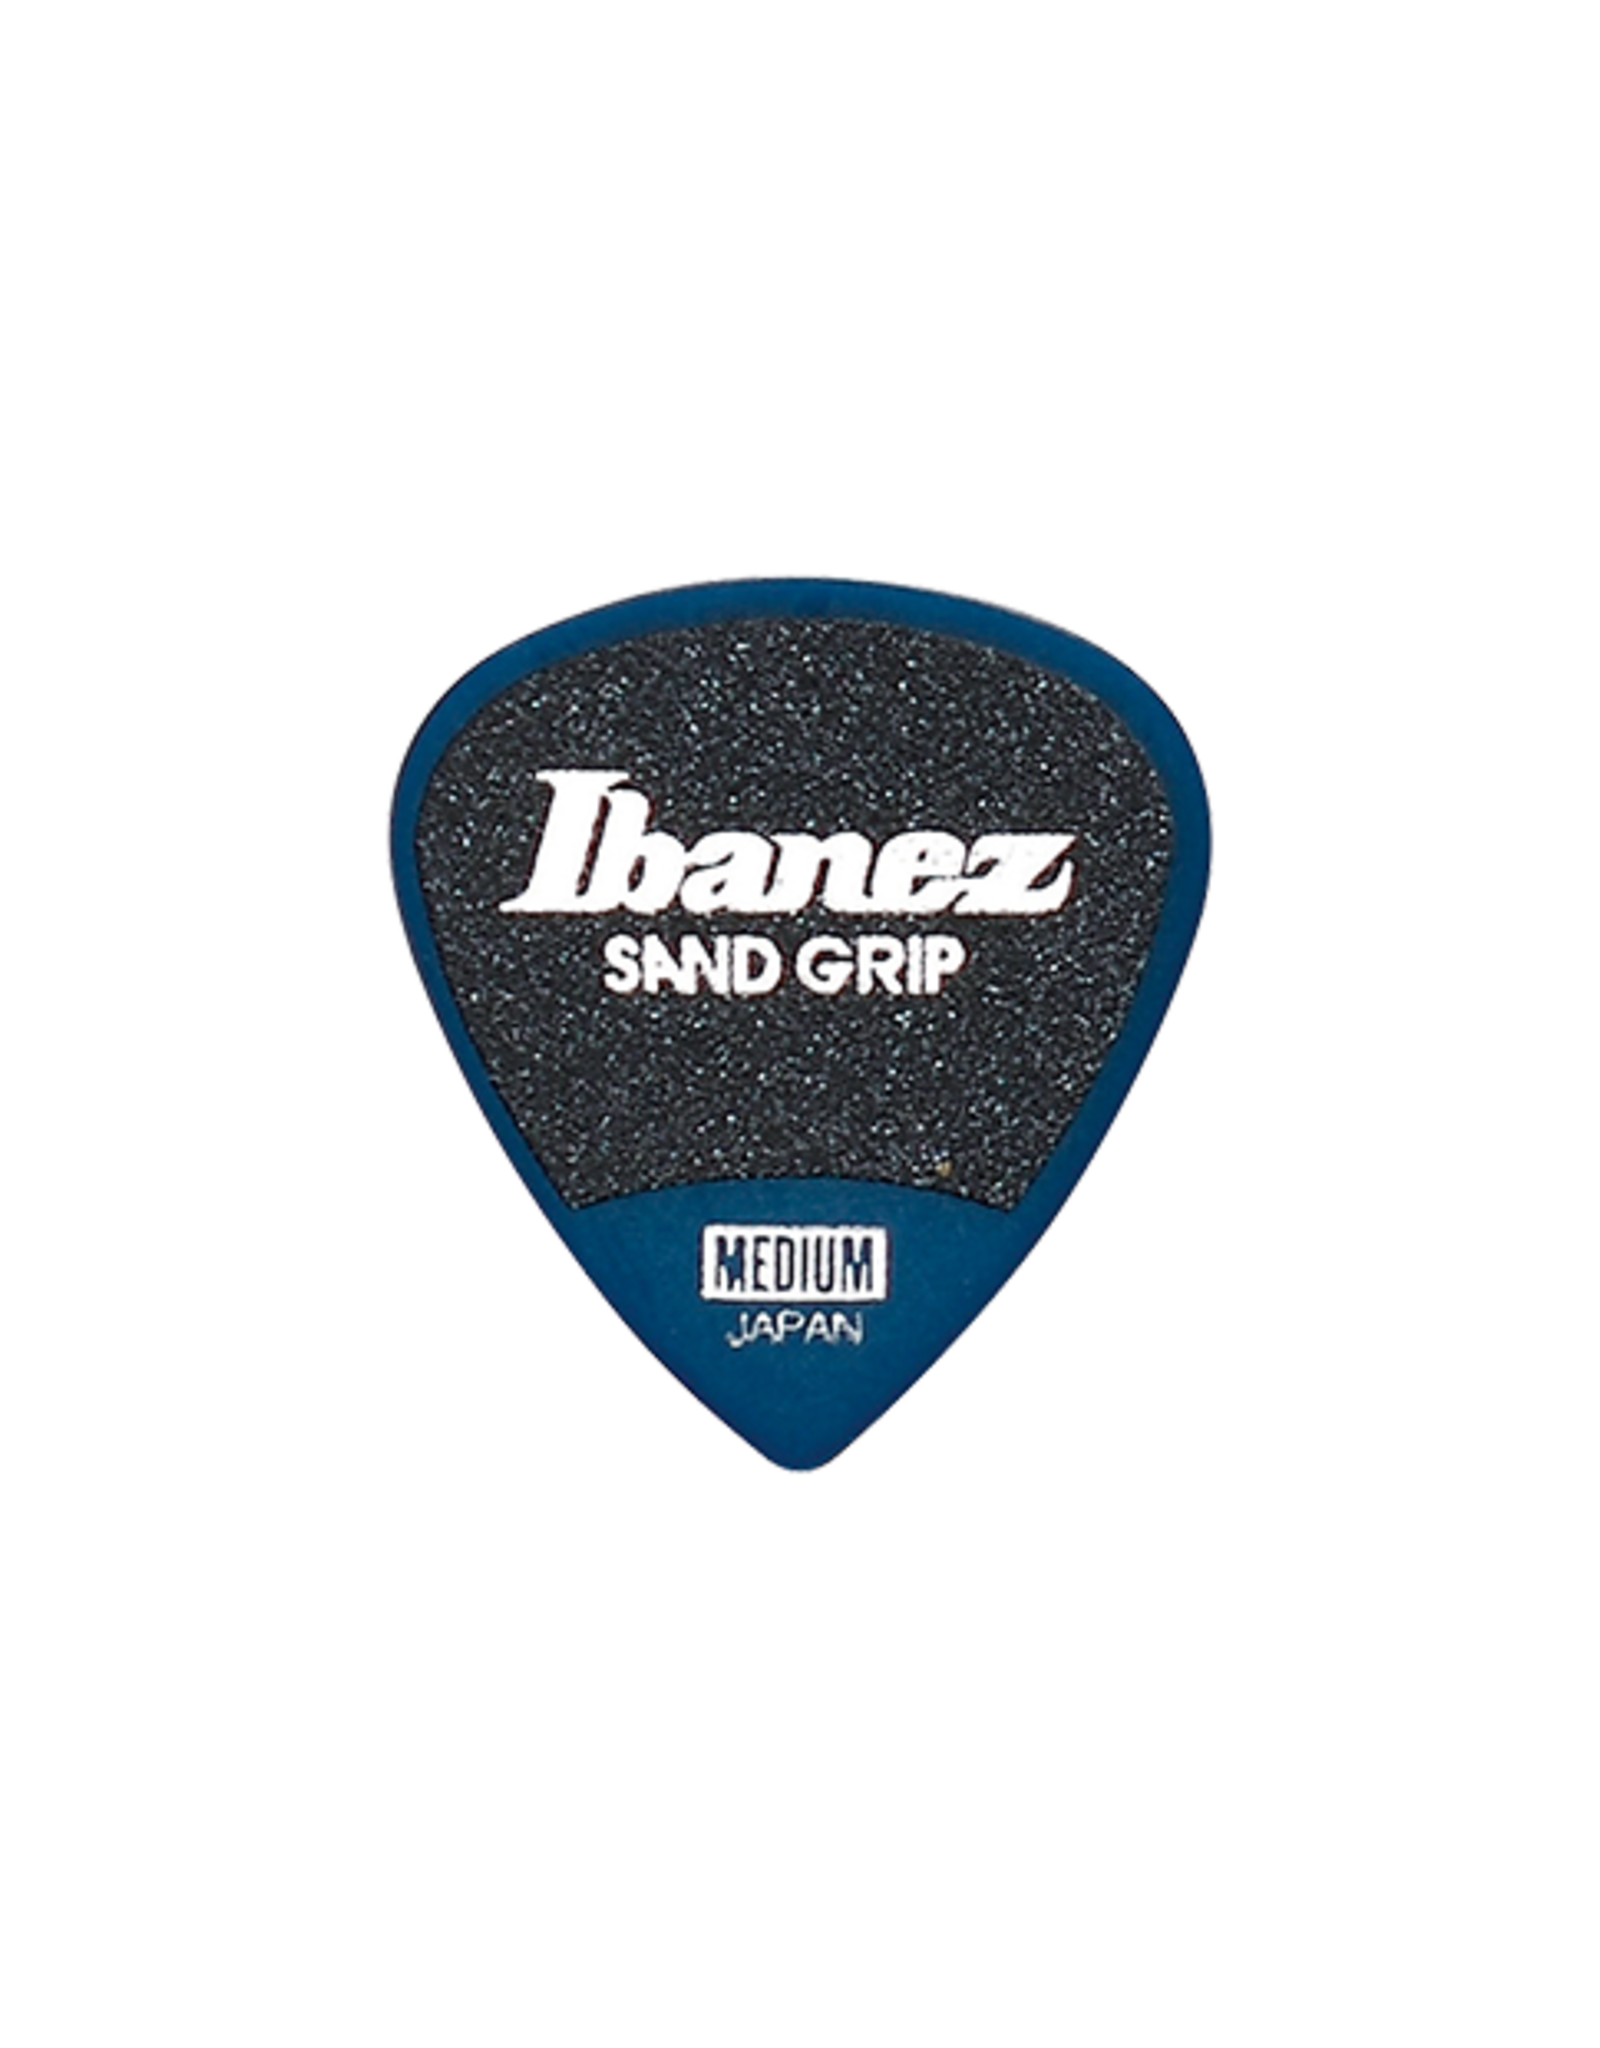 Ibanez Ibanez Grip Wizard Series Sand Grip Guitar Pick .8 Gauge 6 Pack Deep Blue